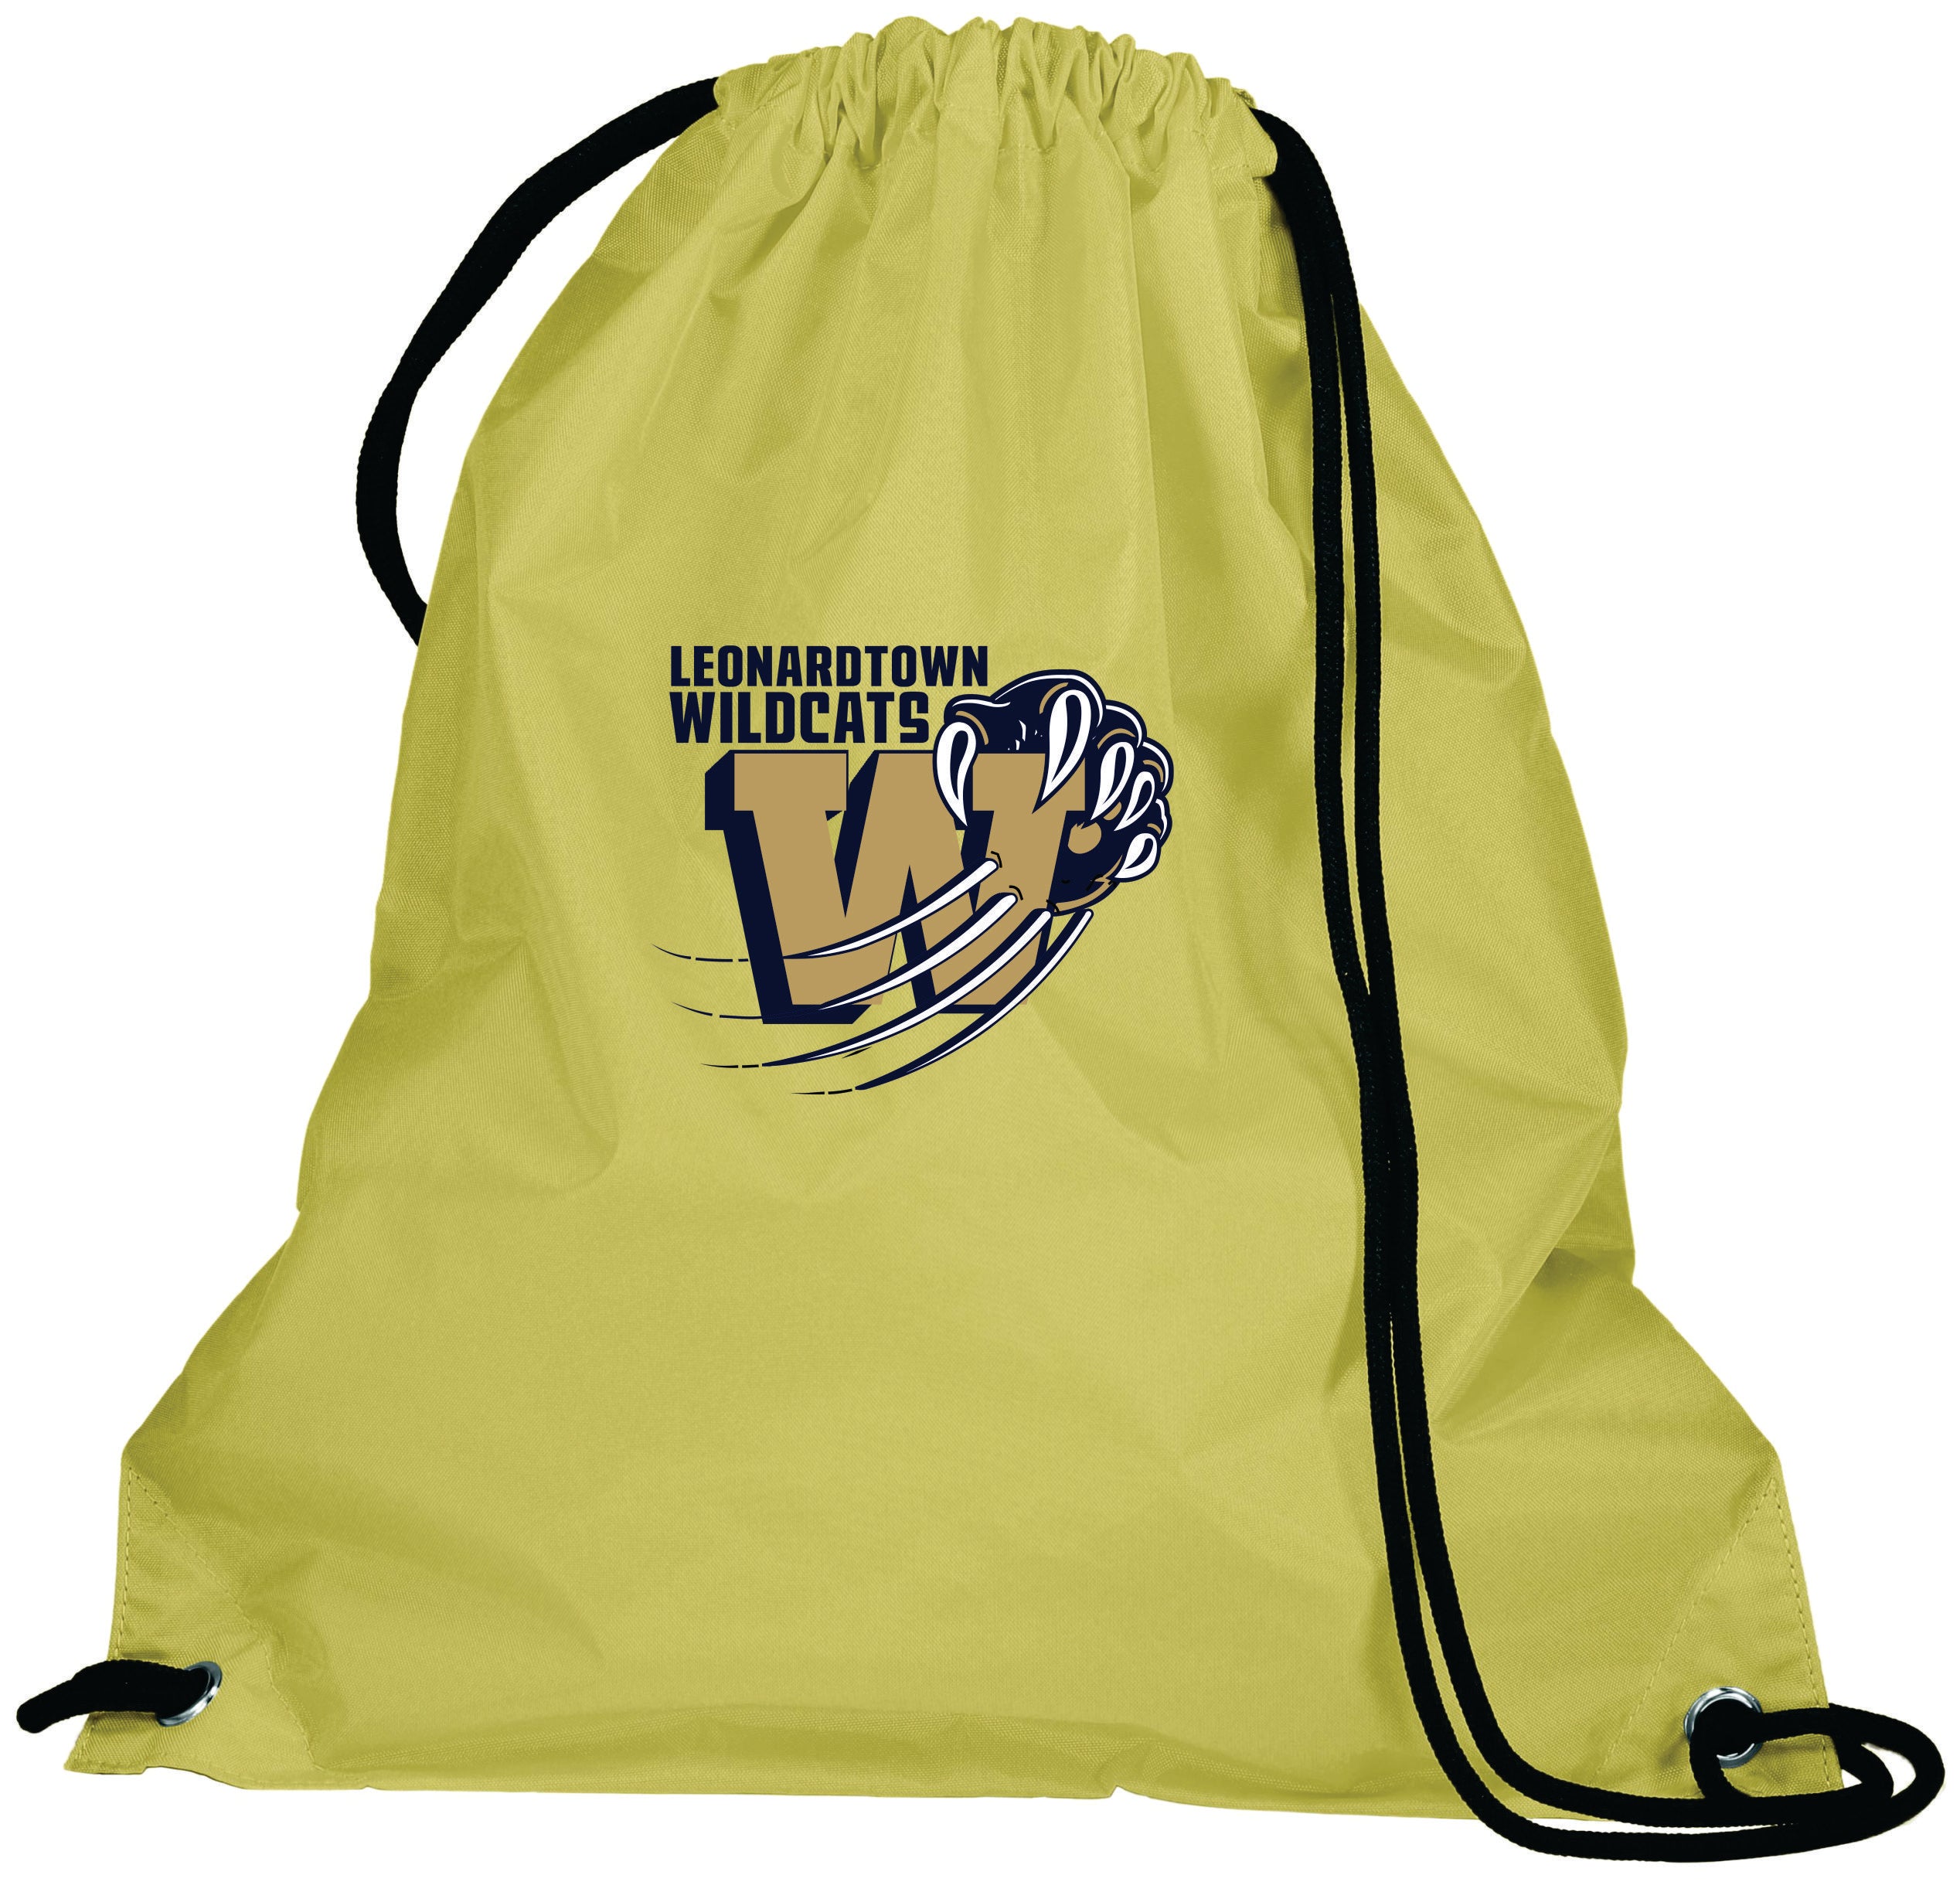 Leonardtown Wildcats Drawstring bags